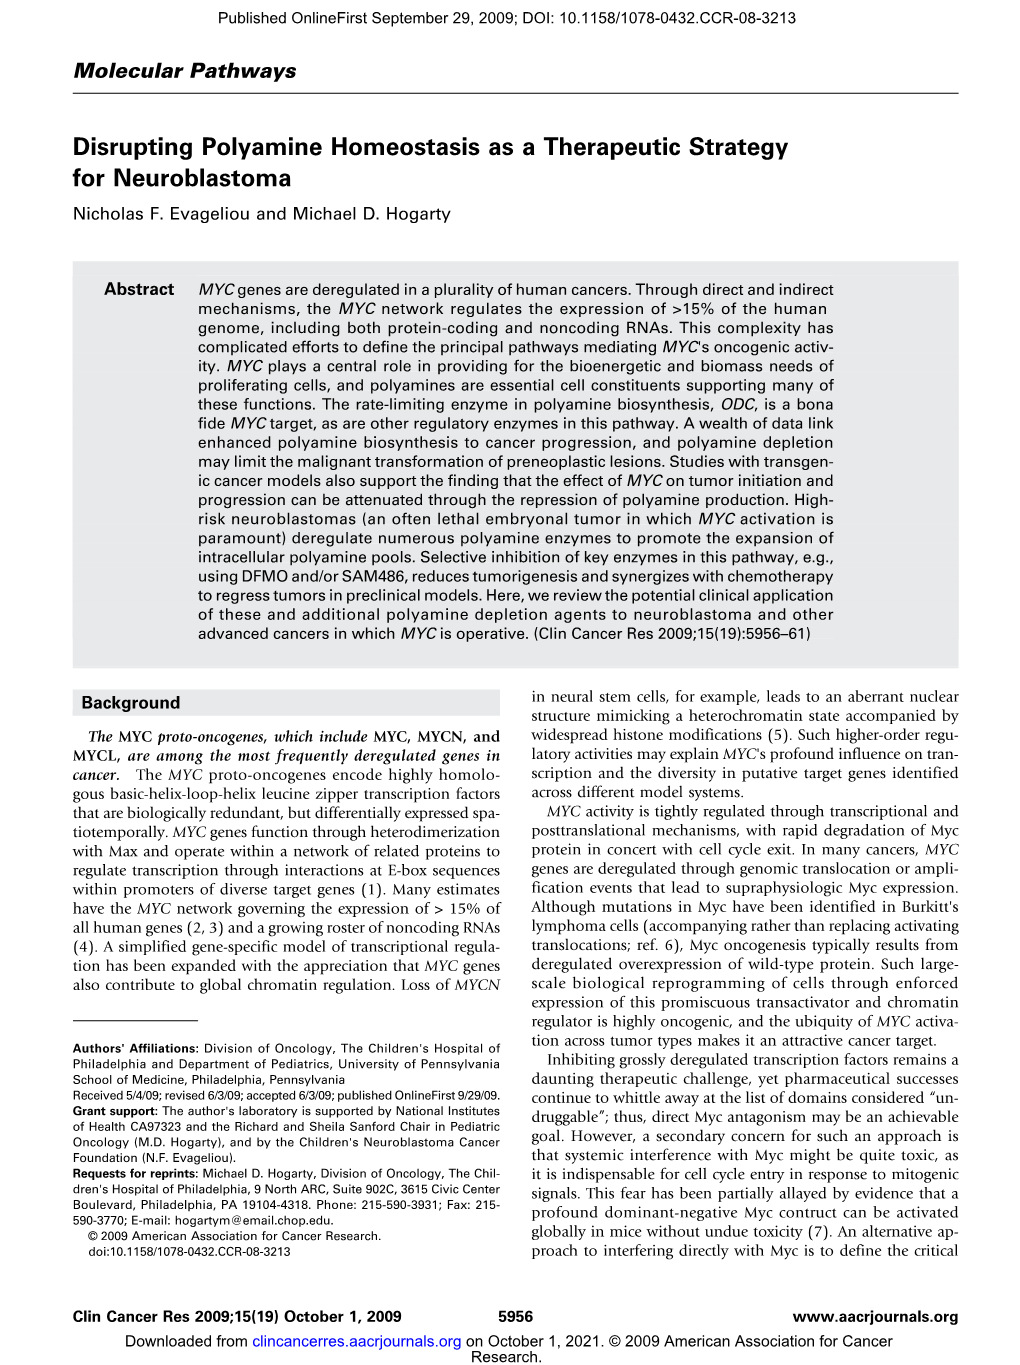 Disrupting Polyamine Homeostasis As a Therapeutic Strategy for Neuroblastoma Nicholas F